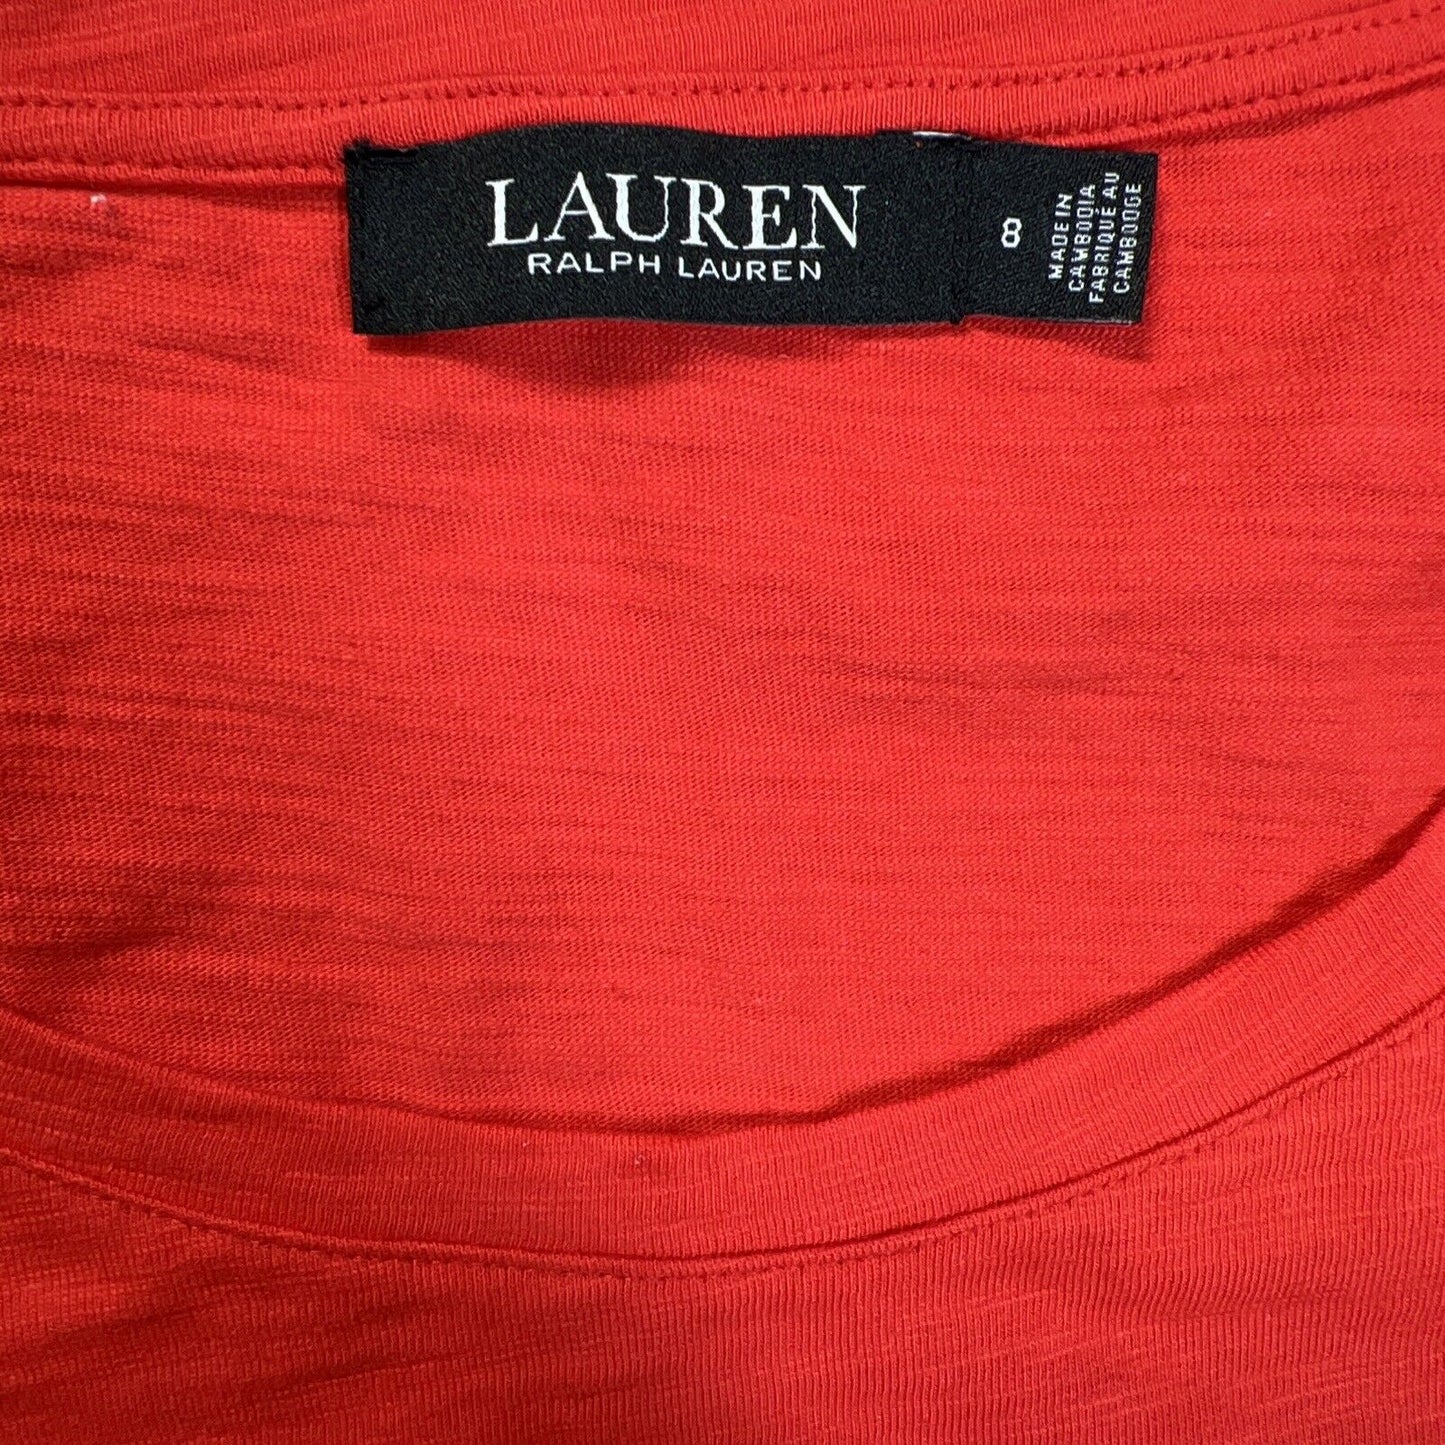 LAUREN Ralph Lauren Women's Red Wrap Short Sleeve Dress - 8